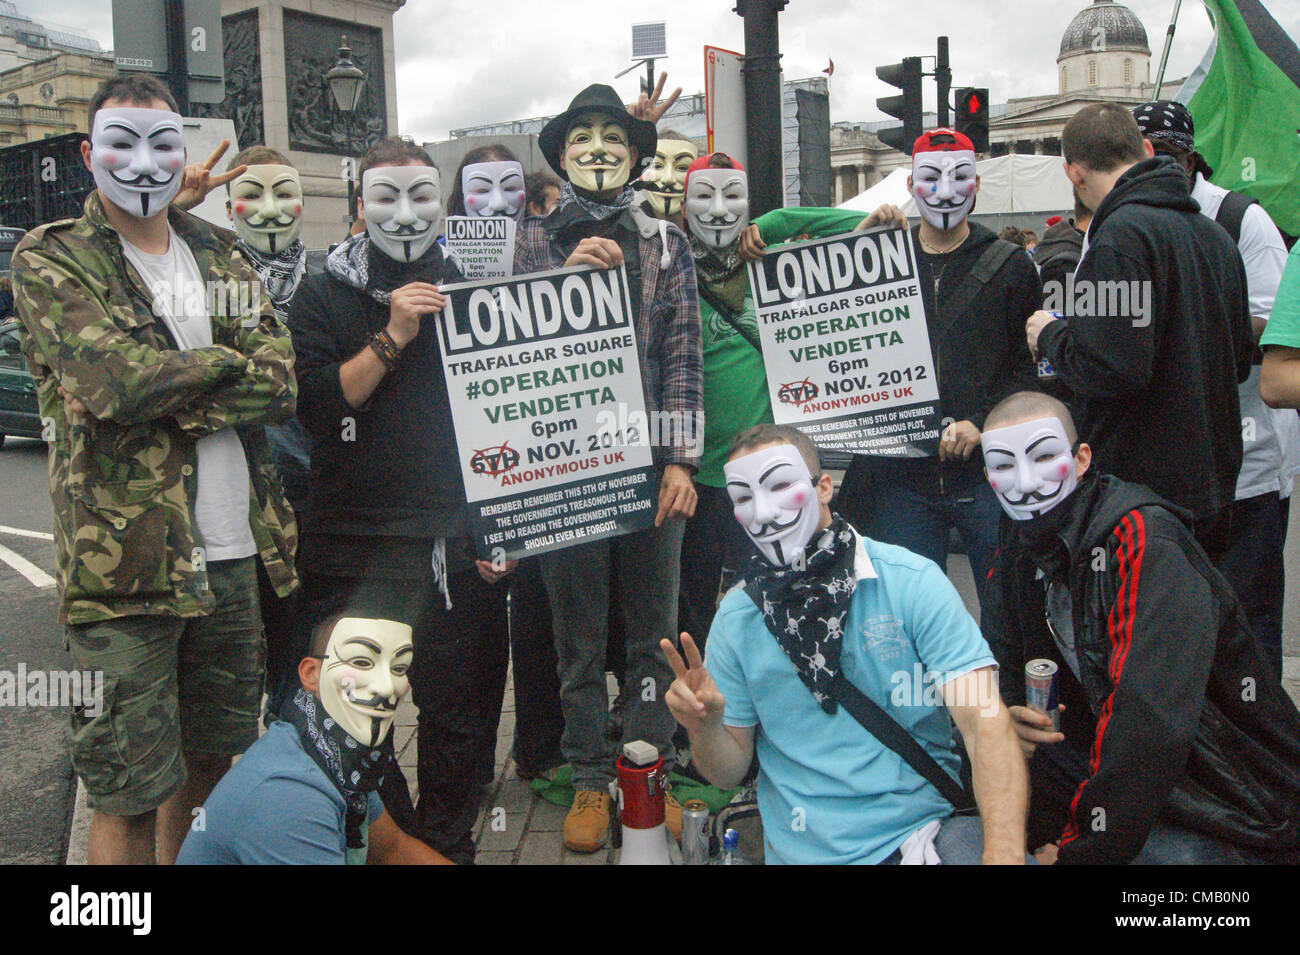 Attivista politico gruppo Annonymous Regno unito al World Pride Evento a Londra in Trafalgar Square distribuendo volantini per la promozione di un evento pianificato il 5 novembre 2012 Foto Stock